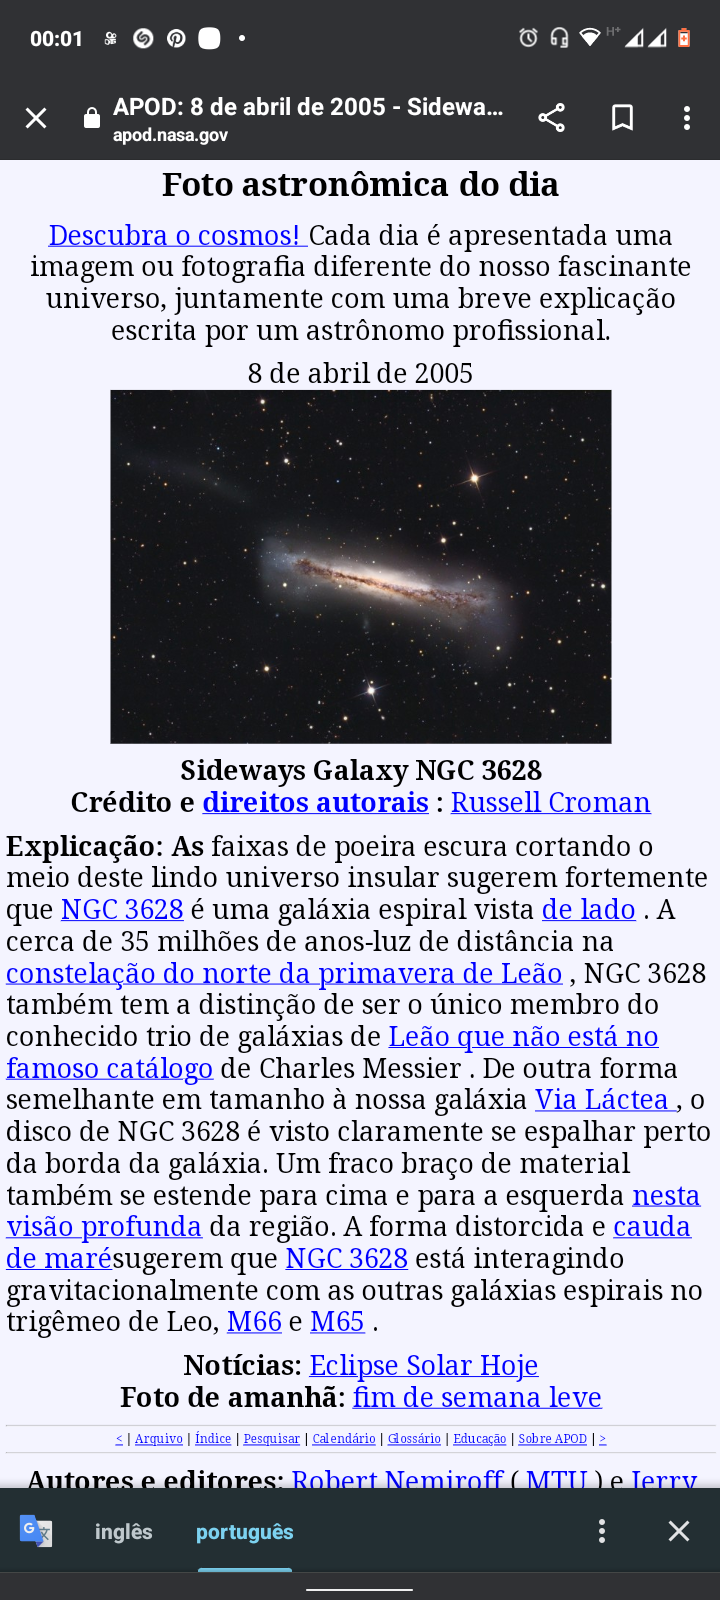 [IE ONON OQ® da8

APOD: 8 de abril de 2005 - Sidewa...

 

Foto astronomica do dia

Descubra o cosmos! Cada dia é apresentada uma
imagem ou fotografia diferente do nosso fascinante
universo, juntamente com uma breve explicagao
escrita por um astronomo profissional.

8 de abril de 2005

   

Sideways Galaxy NGC 3628
Crédito e direitos autorais : Russell Croman

Explicagao: As faixas de poeira escura cortando o
melo deste lindo universo insular sugerem fortermente
que NGC 3628 ¢ uma galaxia espiral vista de lado . A
cerca de 35 milhoes de anos-luz de distancia na
constelagao do norte da primavera de Ledao , NGC 3628
também tem a distingao de ser o unico membro do
conhecido trio de galaxias de Ledao que nao esta no
famoso catdlogo de Charles Messier . De outra forma
semelhante em tamanho a nossa galaxia Via Lactea, o
disco de NGC 3628 ¢é visto claramente se espalhar perto
da borda da galaxia. Um fraco brago de material
também se estende para cima e para a esquerda nesta
visao profunda da regiao. A forma distorcida e cauda
de marésugerem que NGC 3628 esta interagindo
gravitacionalmente com as outras galaxias espirais no
trigémeo de Leo, M66 e M65 .
Noticias: Eclipse Solar Hoje
Foto de amanha: fim de semana leve

CO: LTE [LIT IE